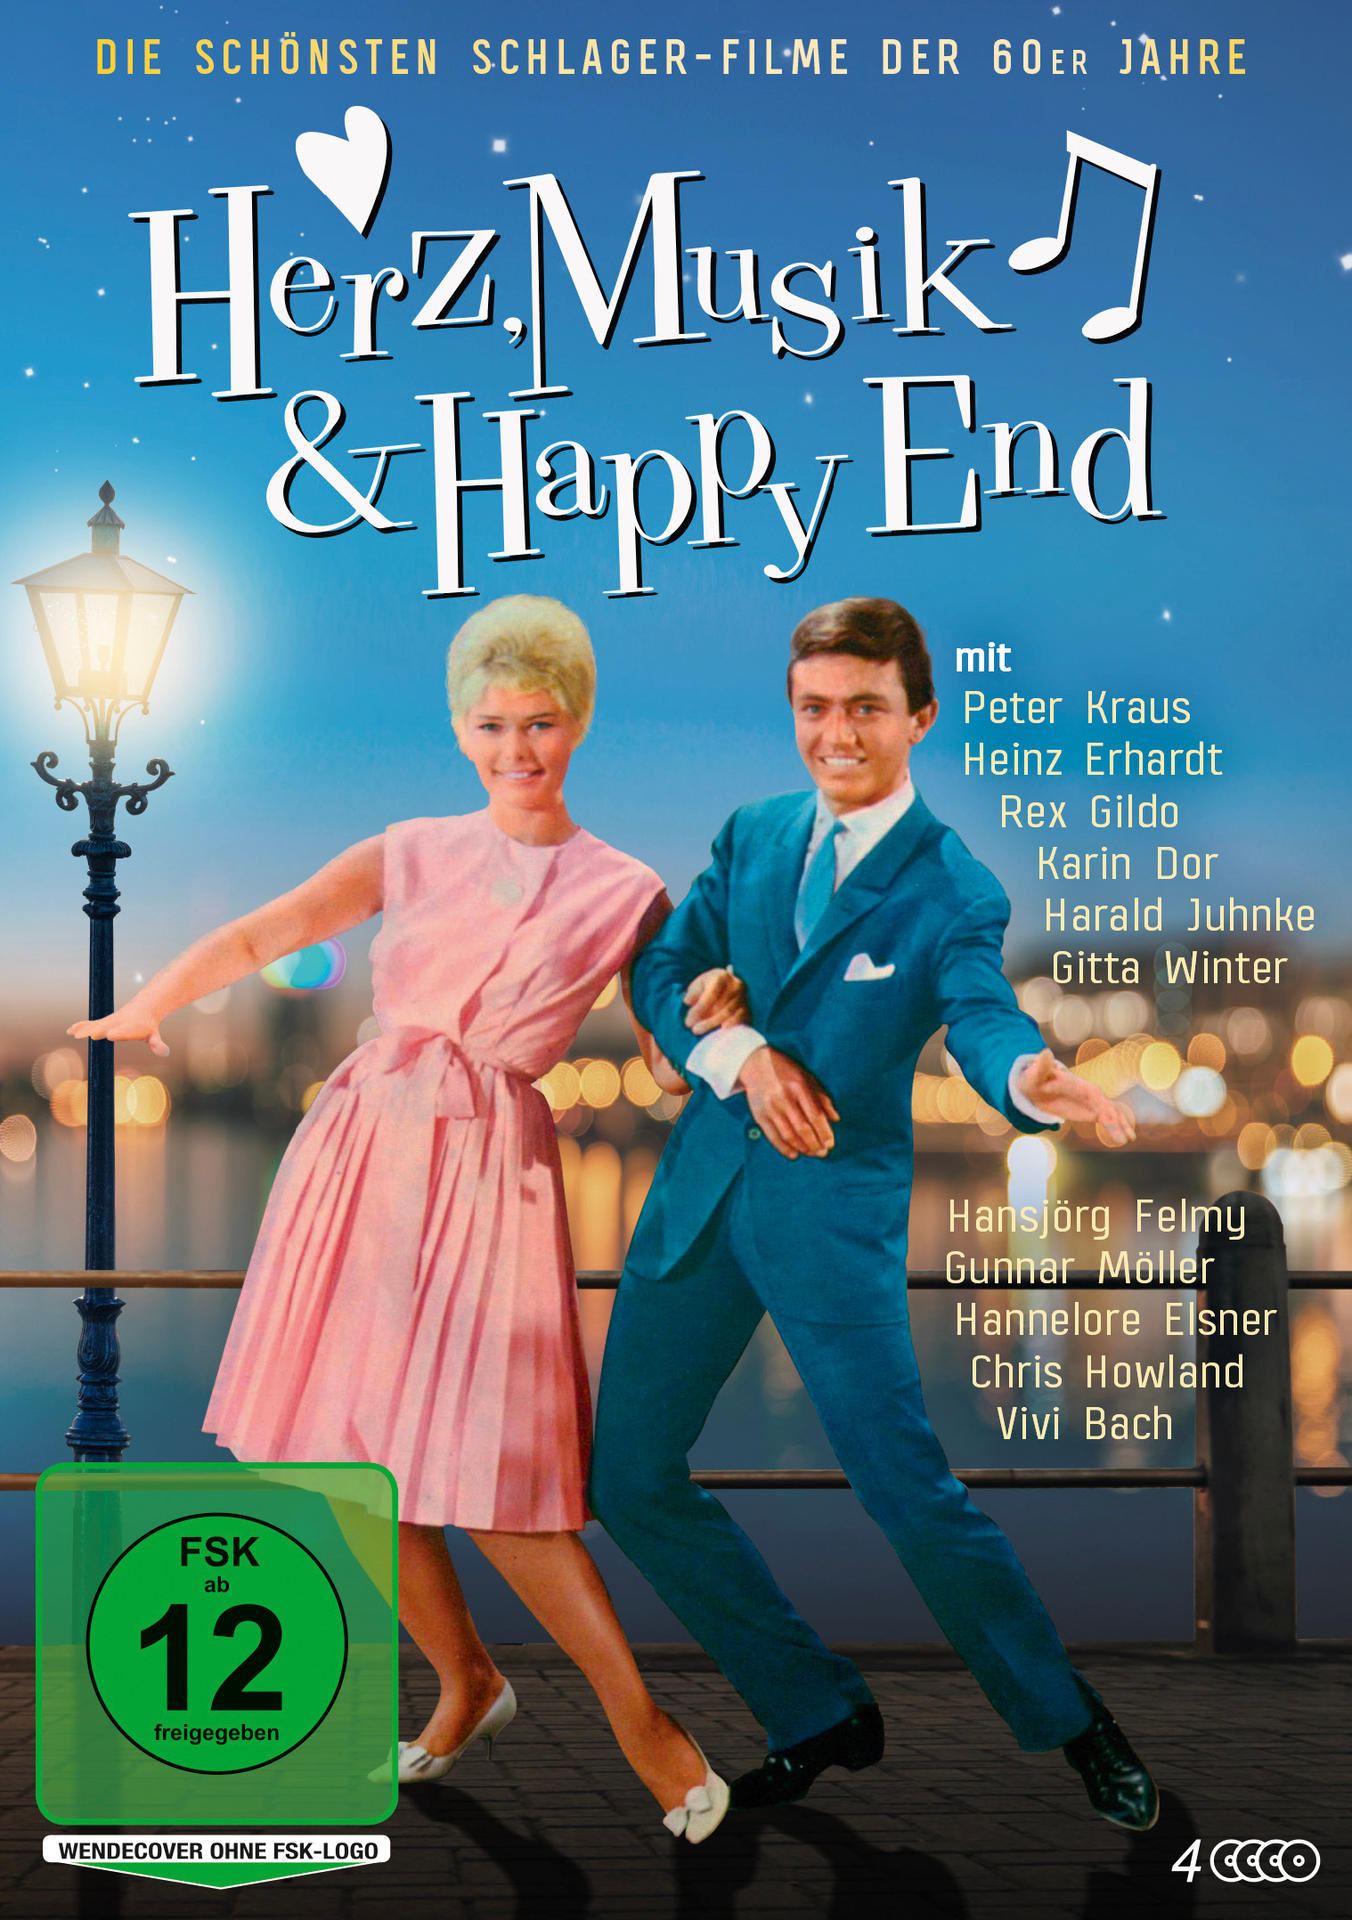 Herz, Musik & DVD Jahre End 60er - Happy Die der schönsten Schlager-Filme